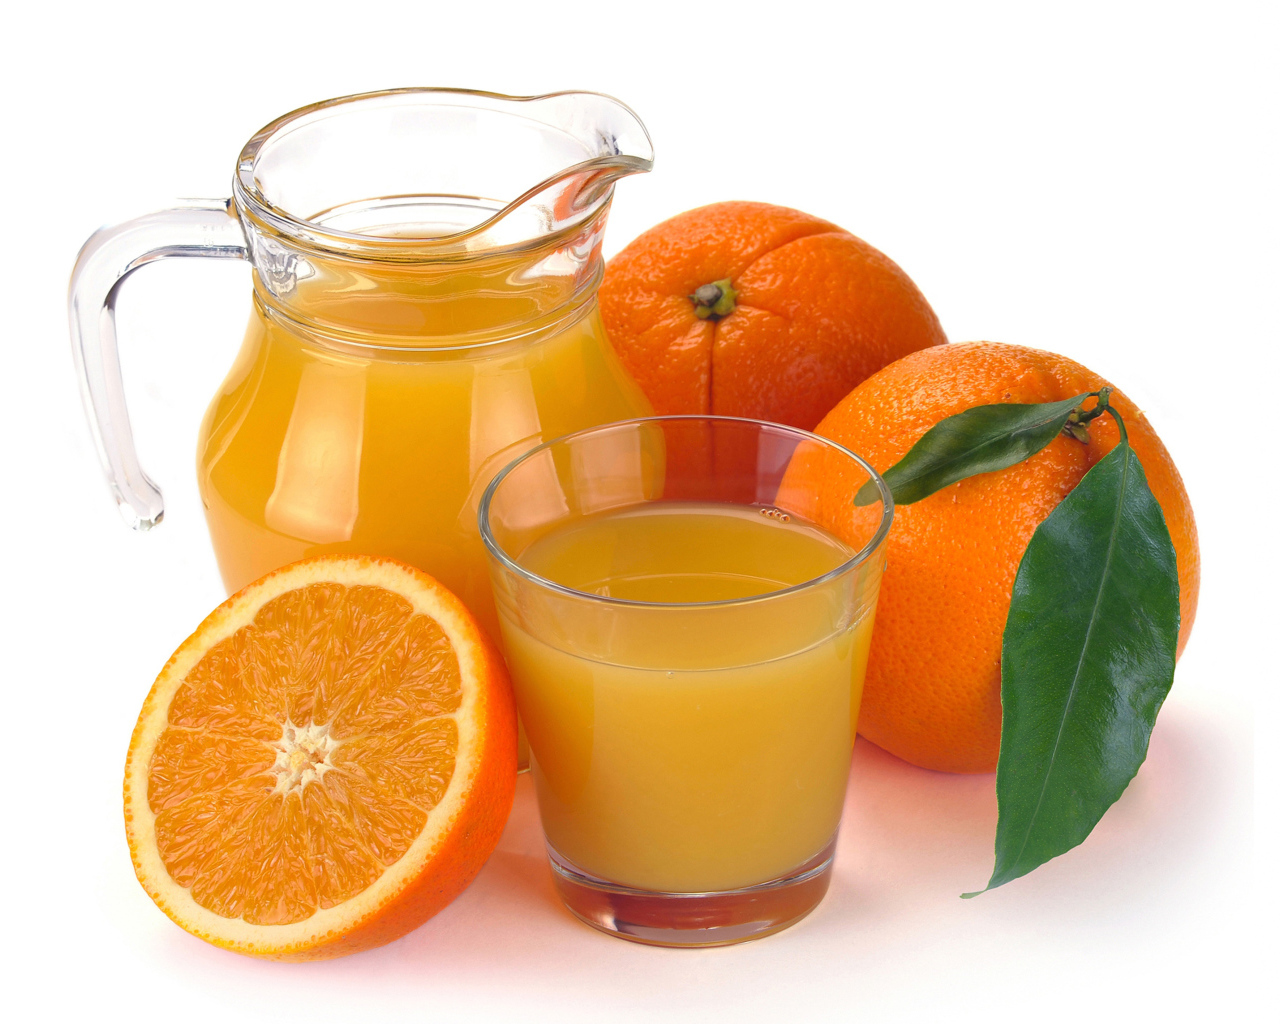 Кувшин со свежевыжатым апельсиновым соком с фруктами на белом фоне